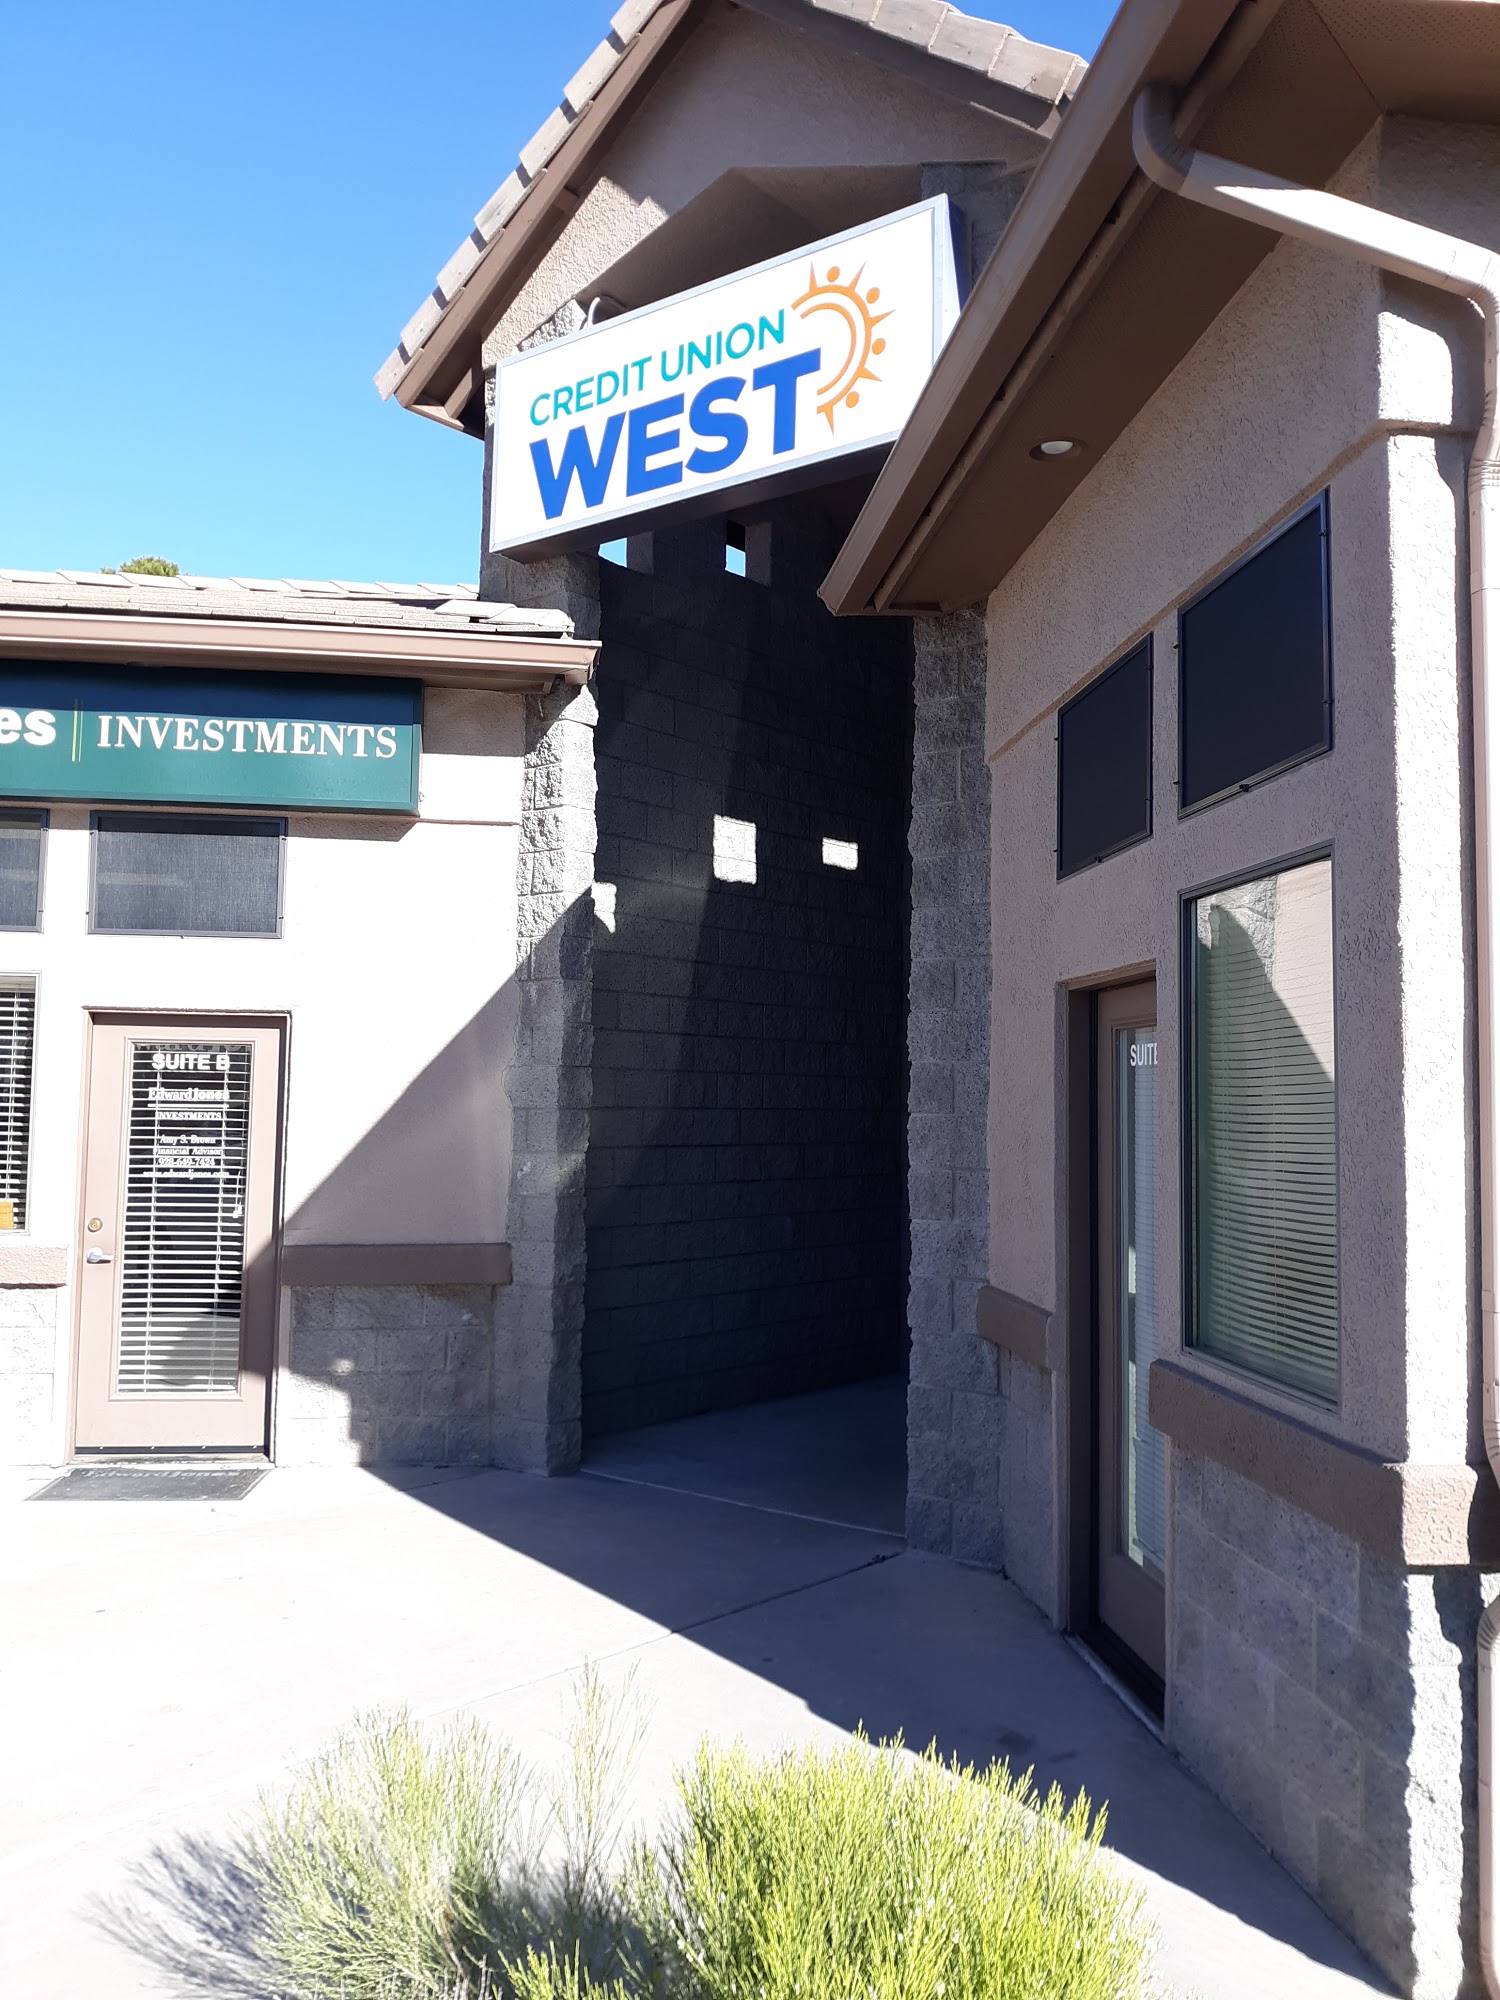 Credit Union West